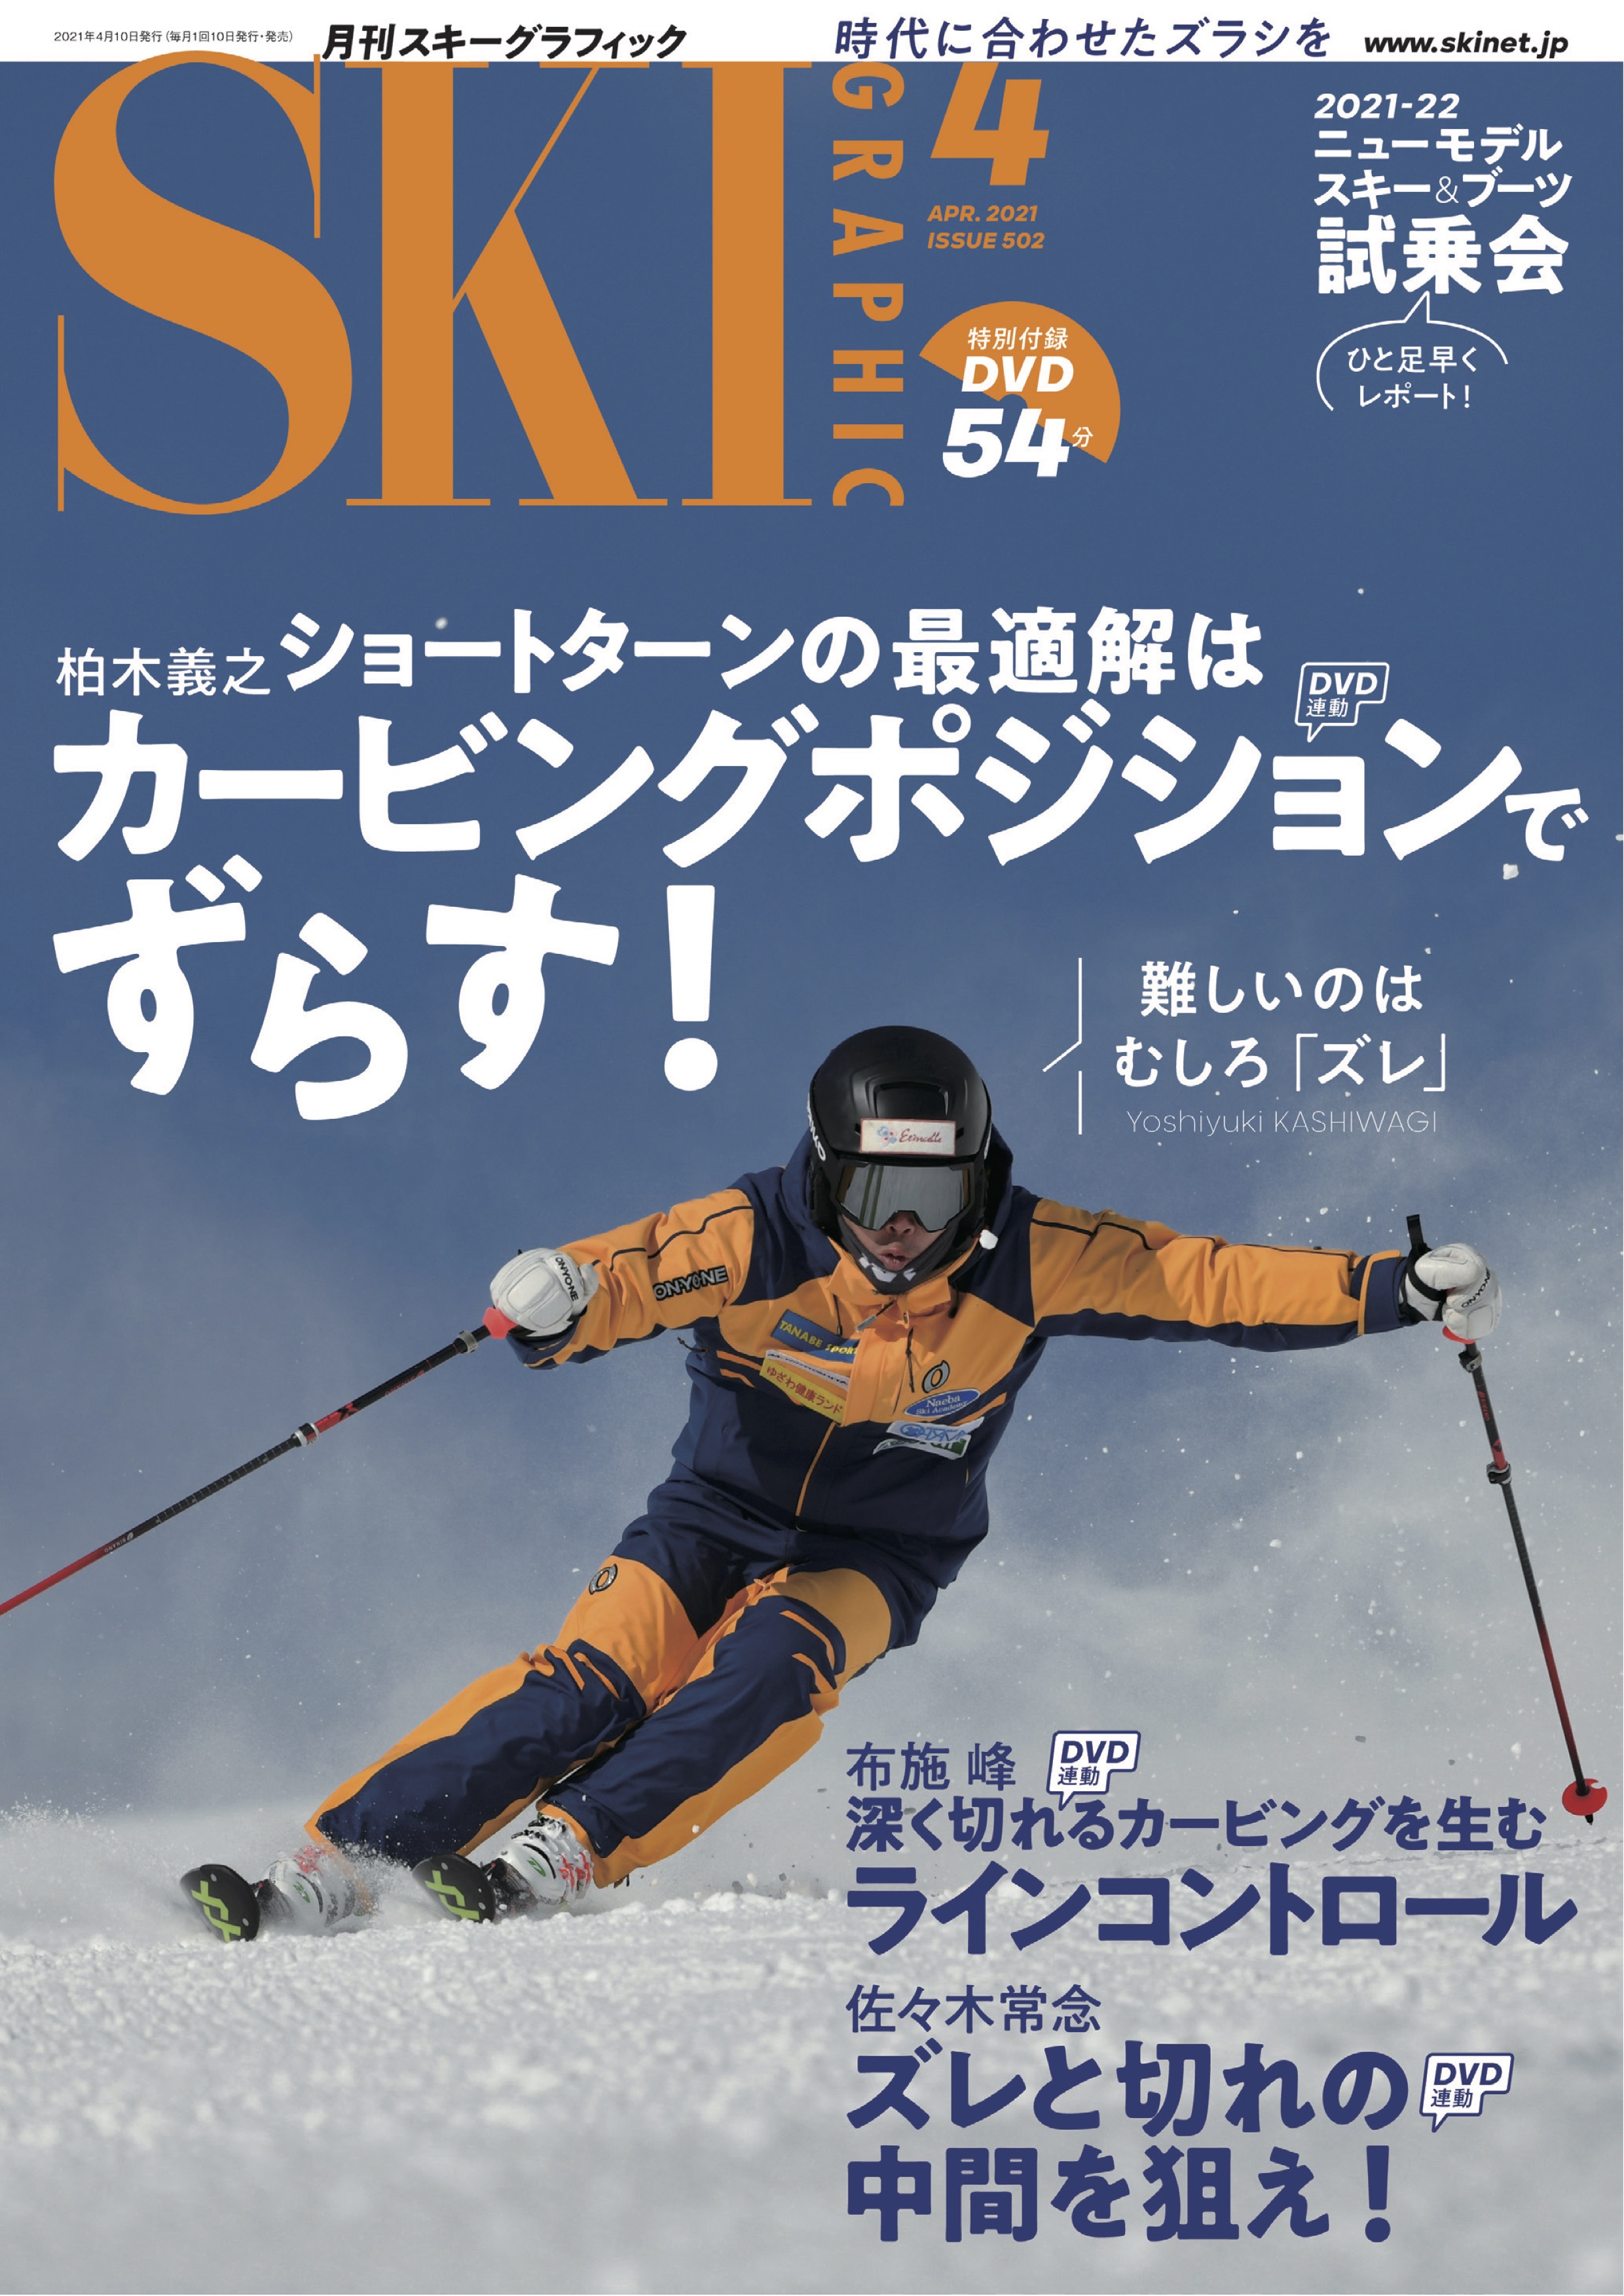 ski-graphic502_202104_cover